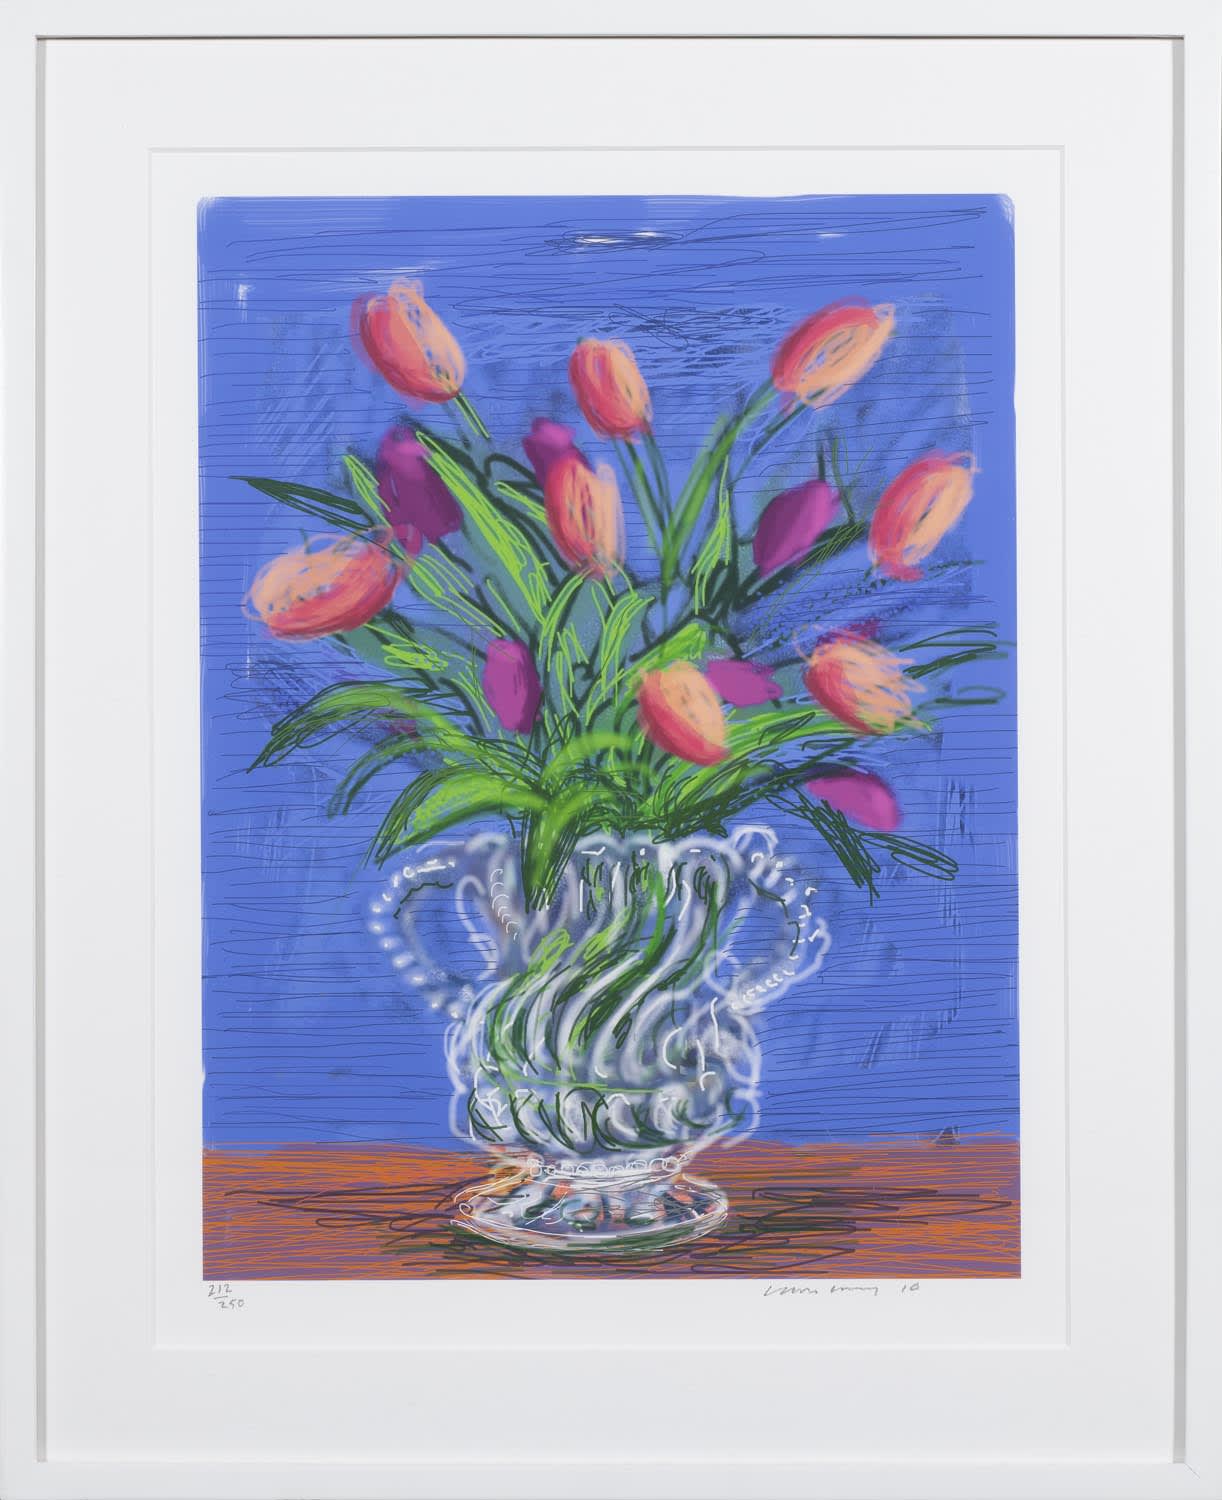 David Hockney, Untitled, 346 Tulips iPad Drawing, 2010